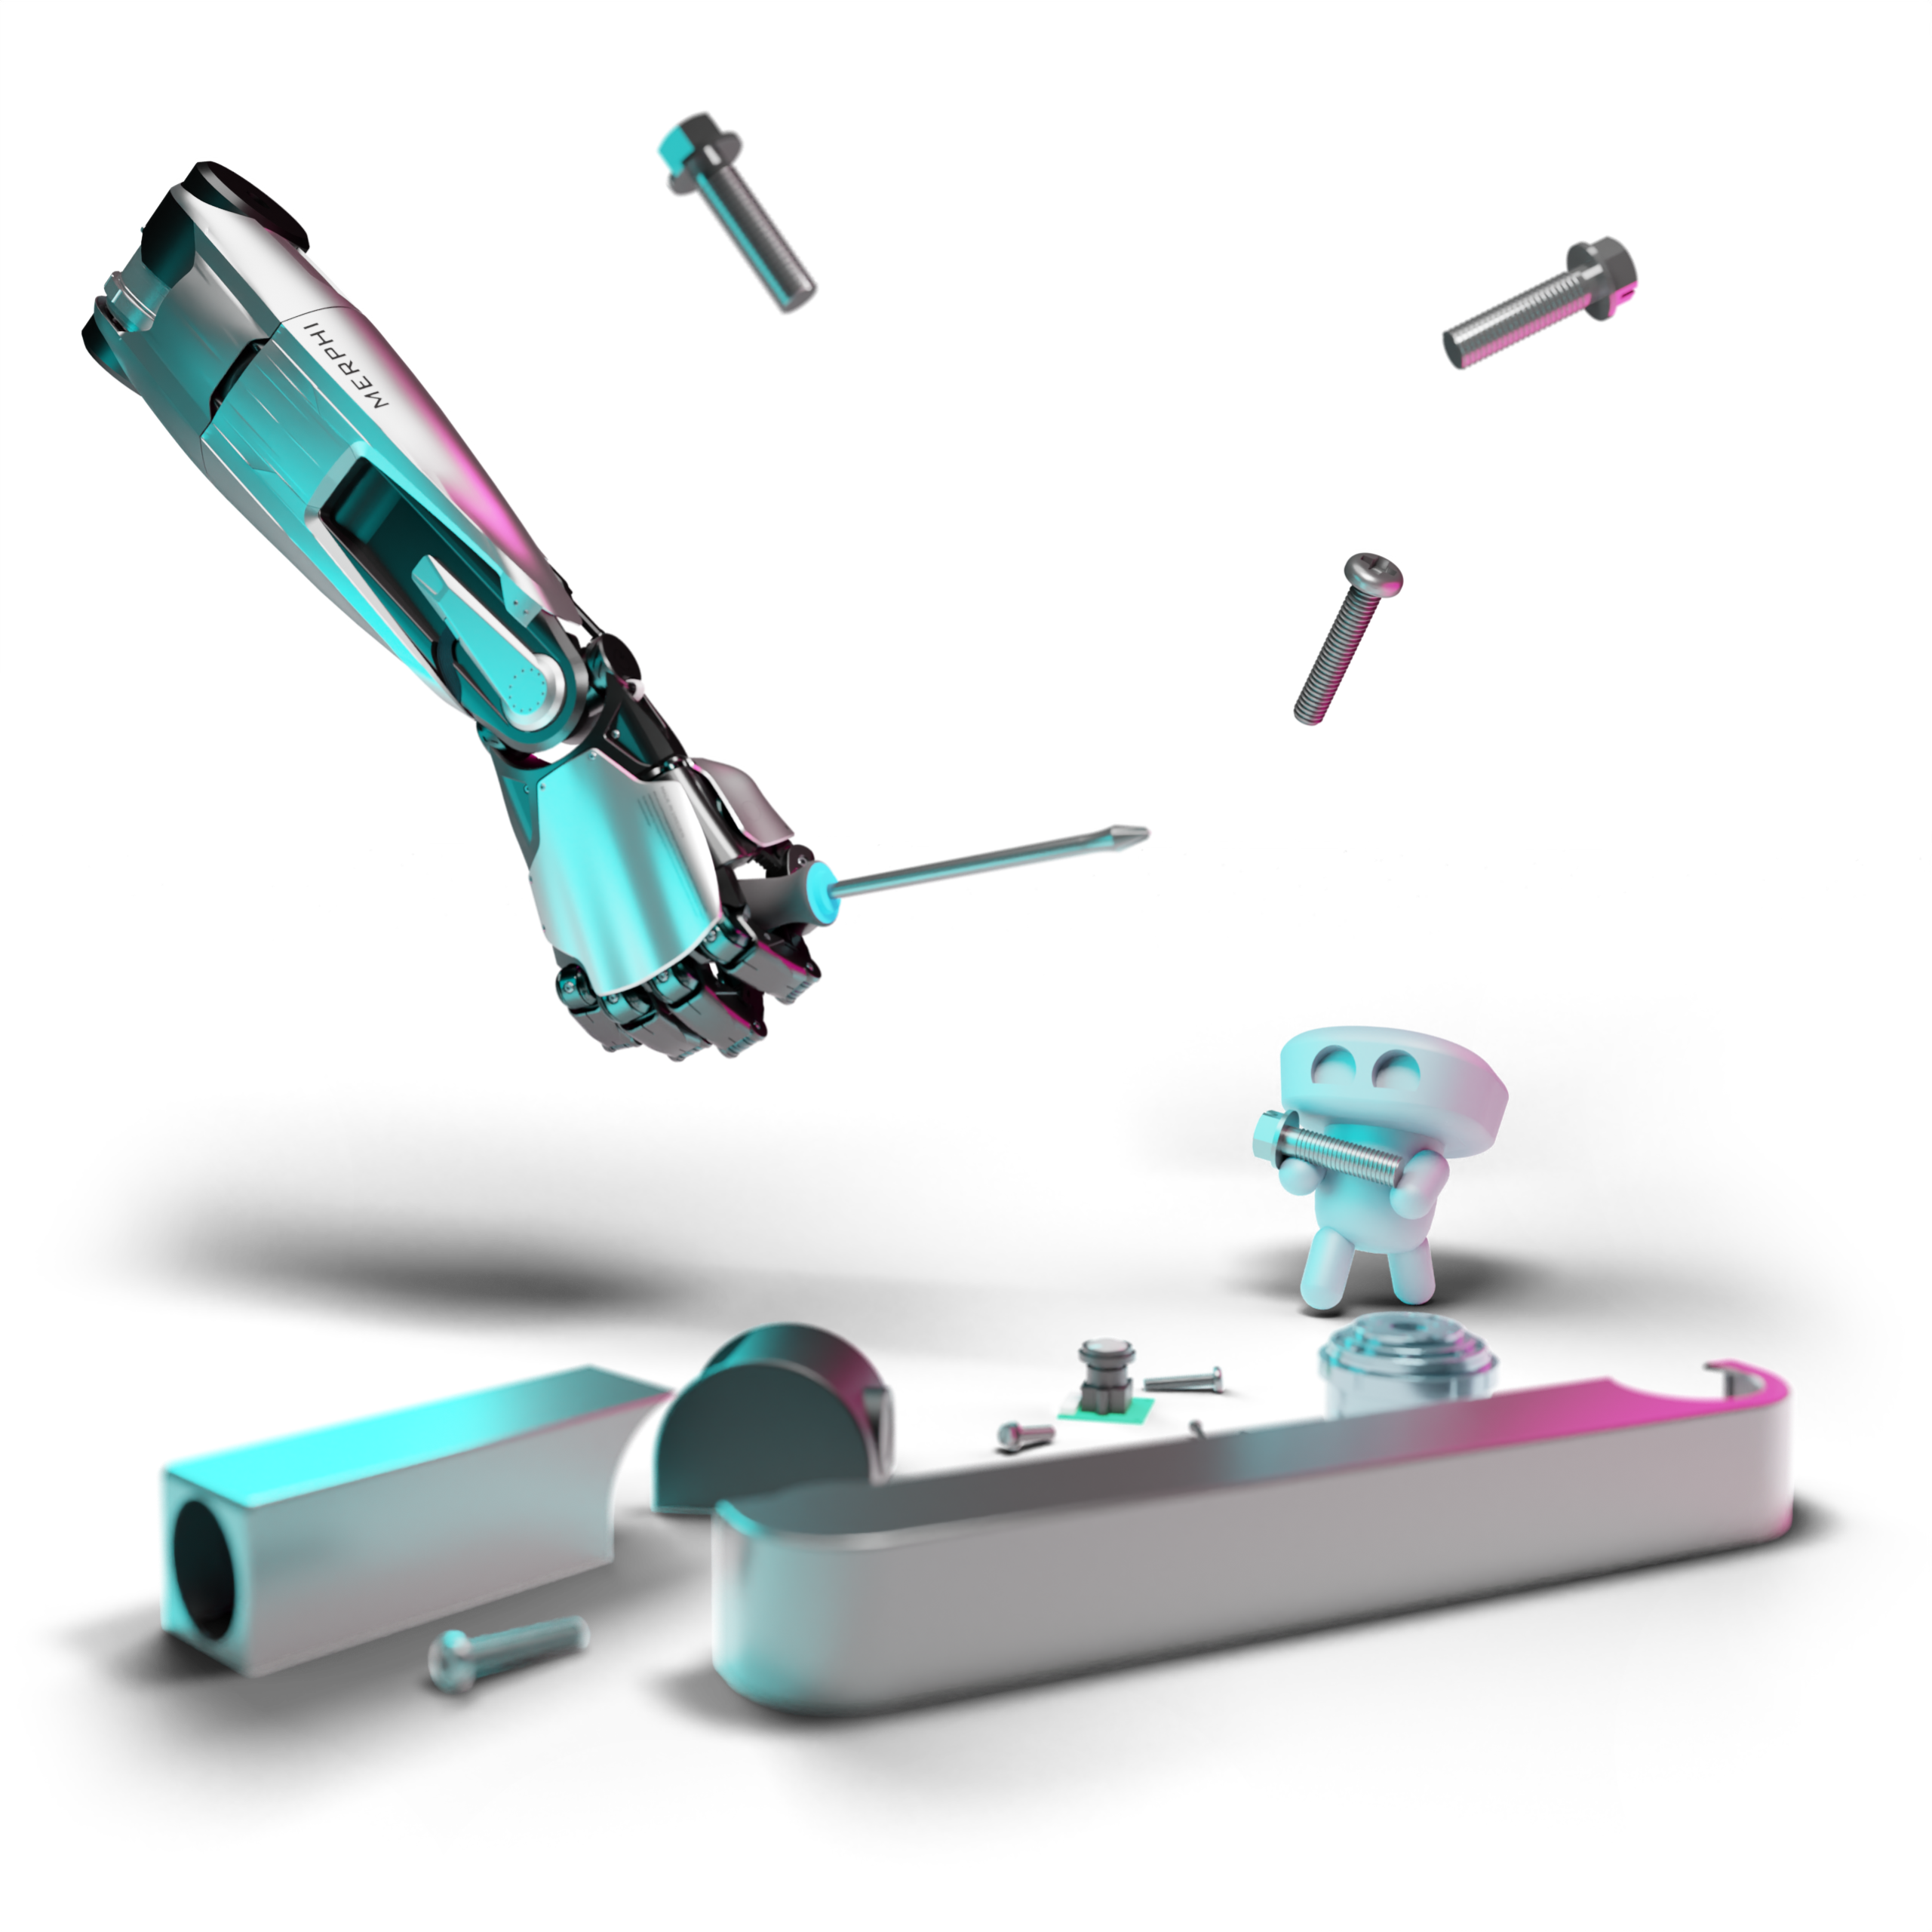 A robot hand holding a screwdriver